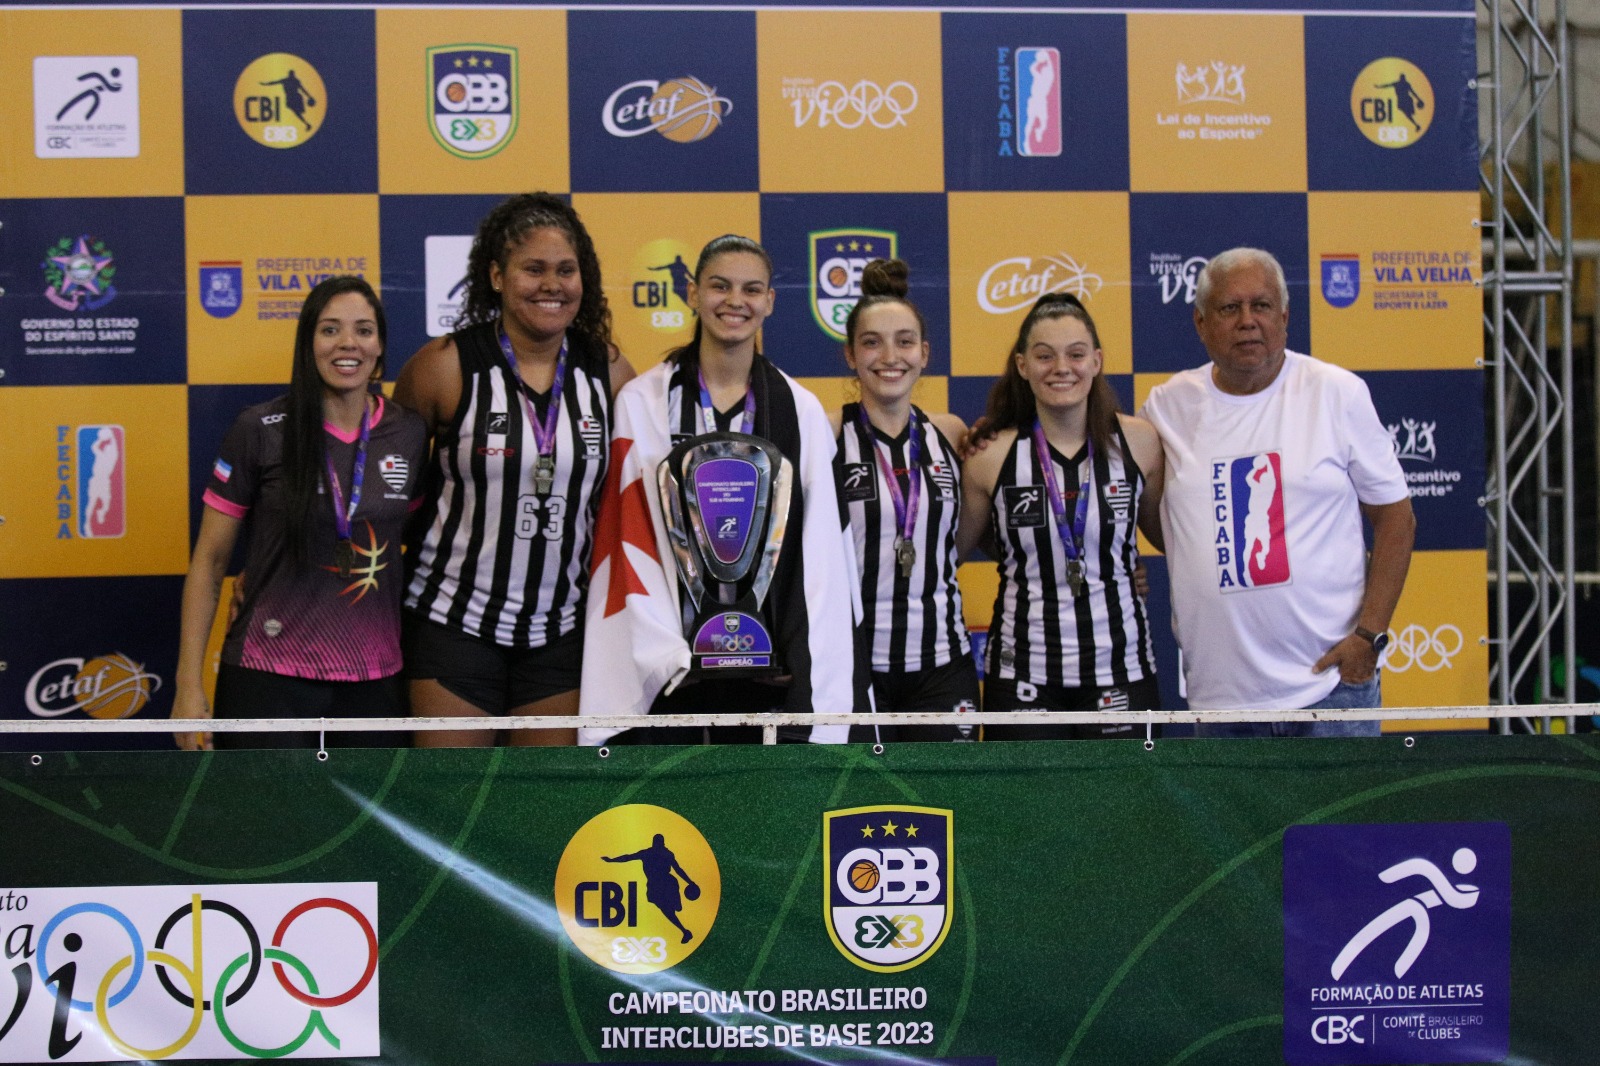 Capixabas conquistaram o título de forma invicta na categoria sub-18 do Campeonato Brasileiro Interclubes de Basquete 3x3, que aconteceu durante todo o fim de semana em Vila Velha